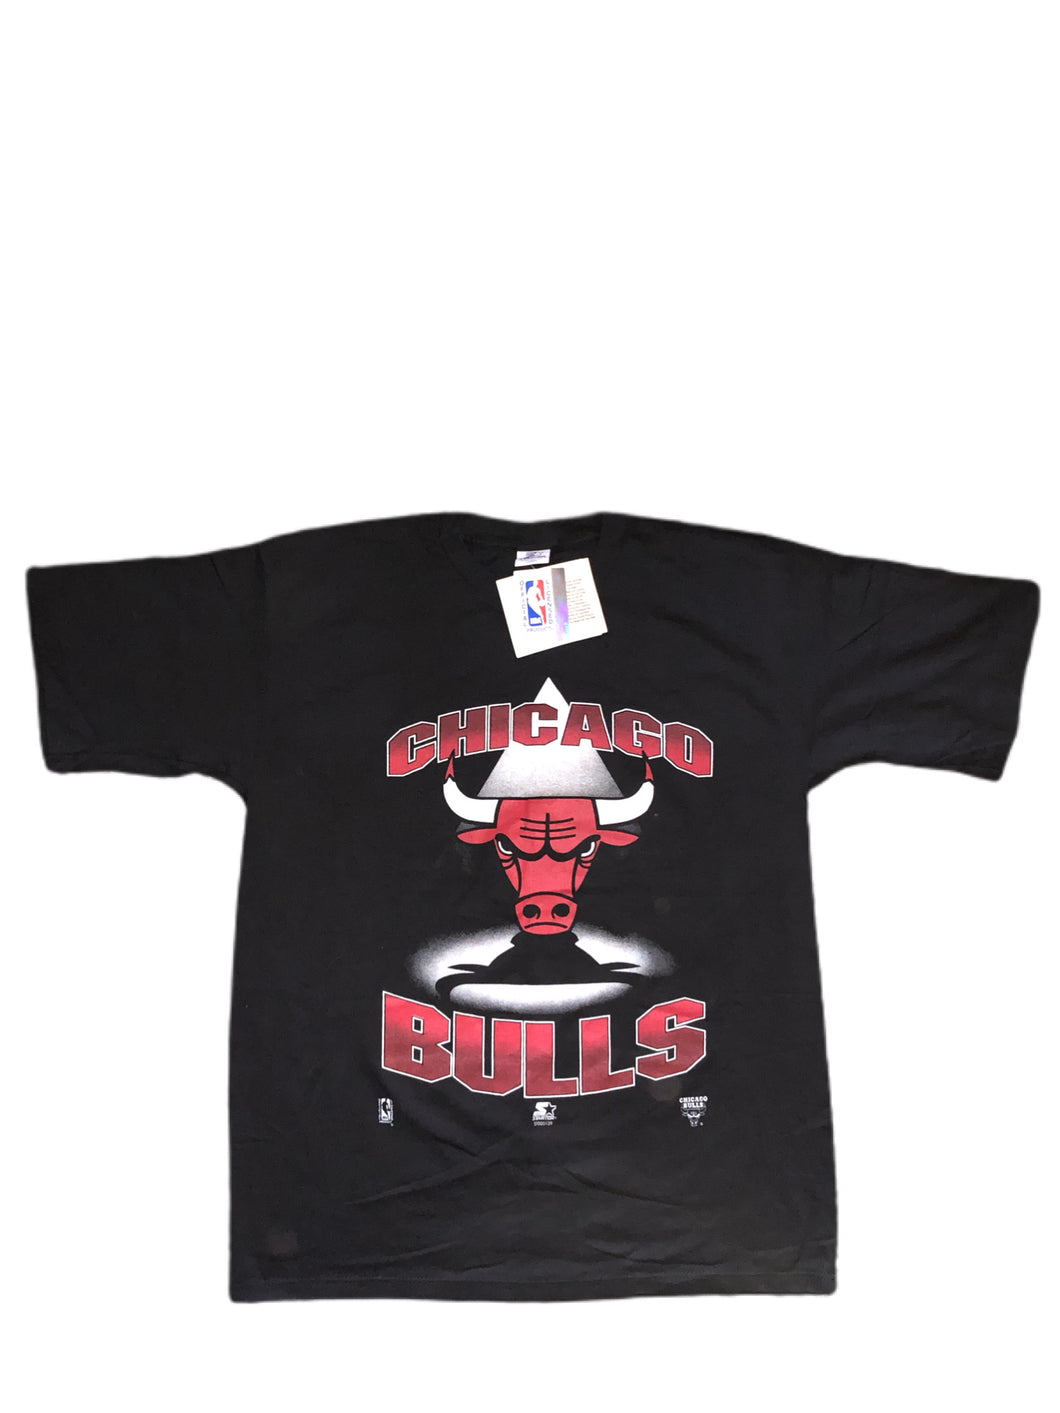 Chicago bulls vintage starter t shirt 1991